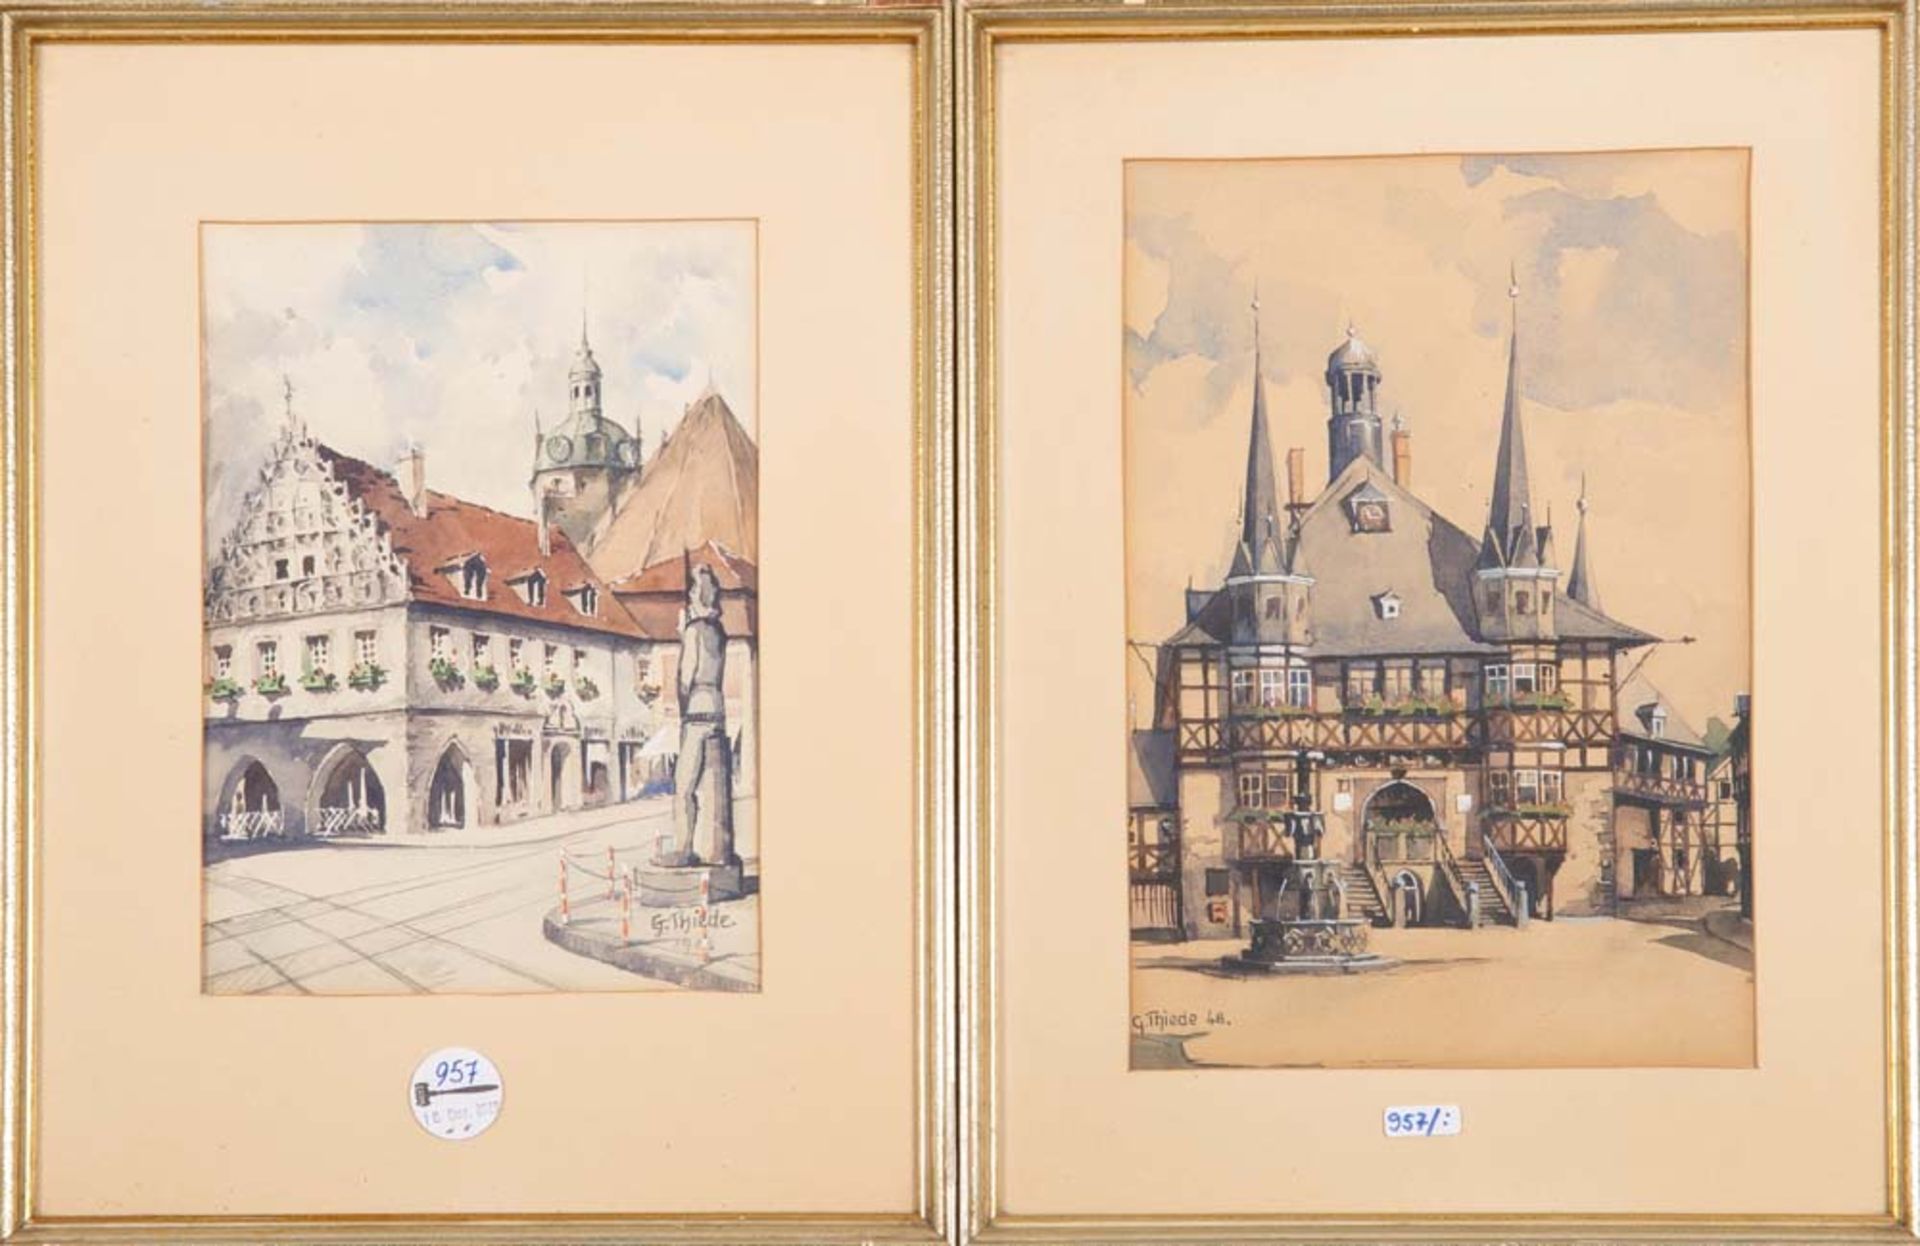 G. Thiede (Maler des 20. Jhs.). Ansicht des Rathauses Wernigerode sowie weitere Gebäudeansicht.